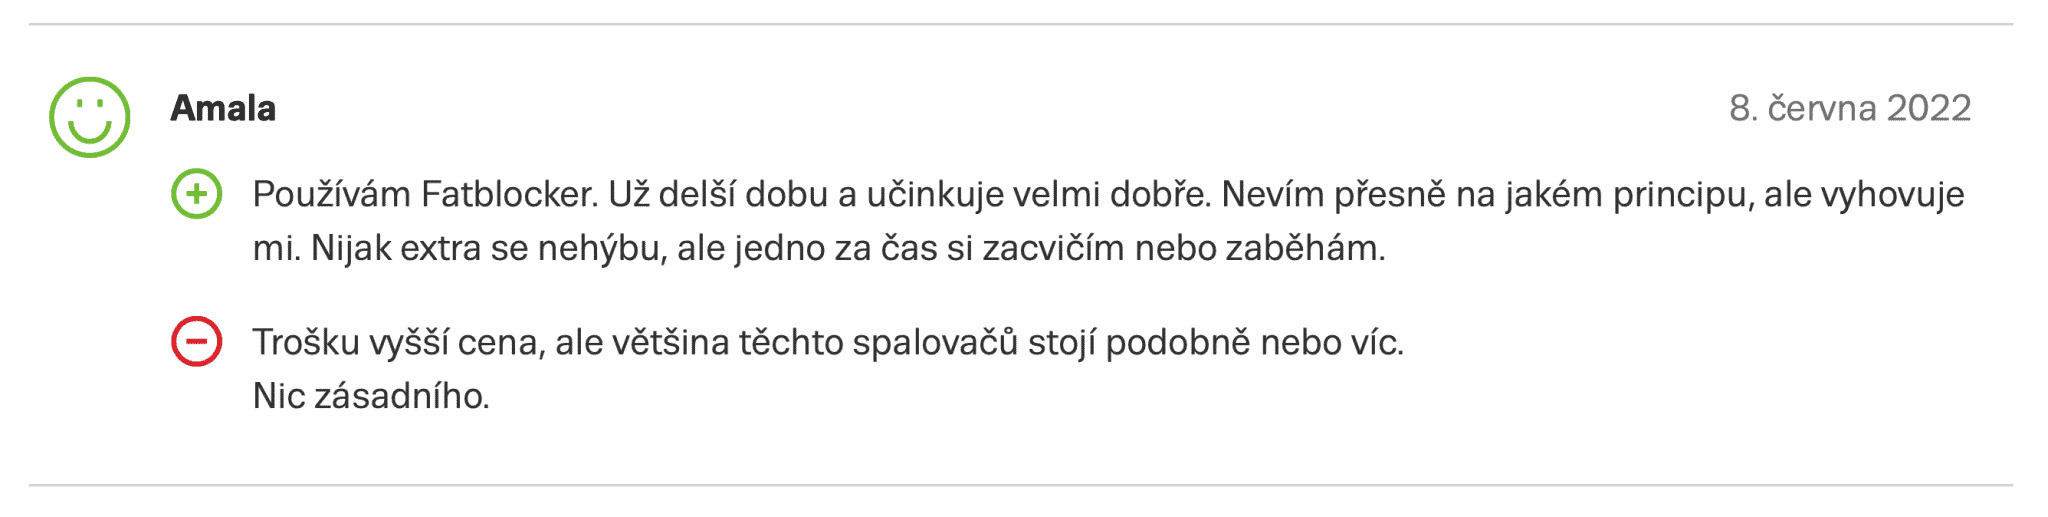 Harmoline zkušenost na internetovém srovnávači Zboží.cz